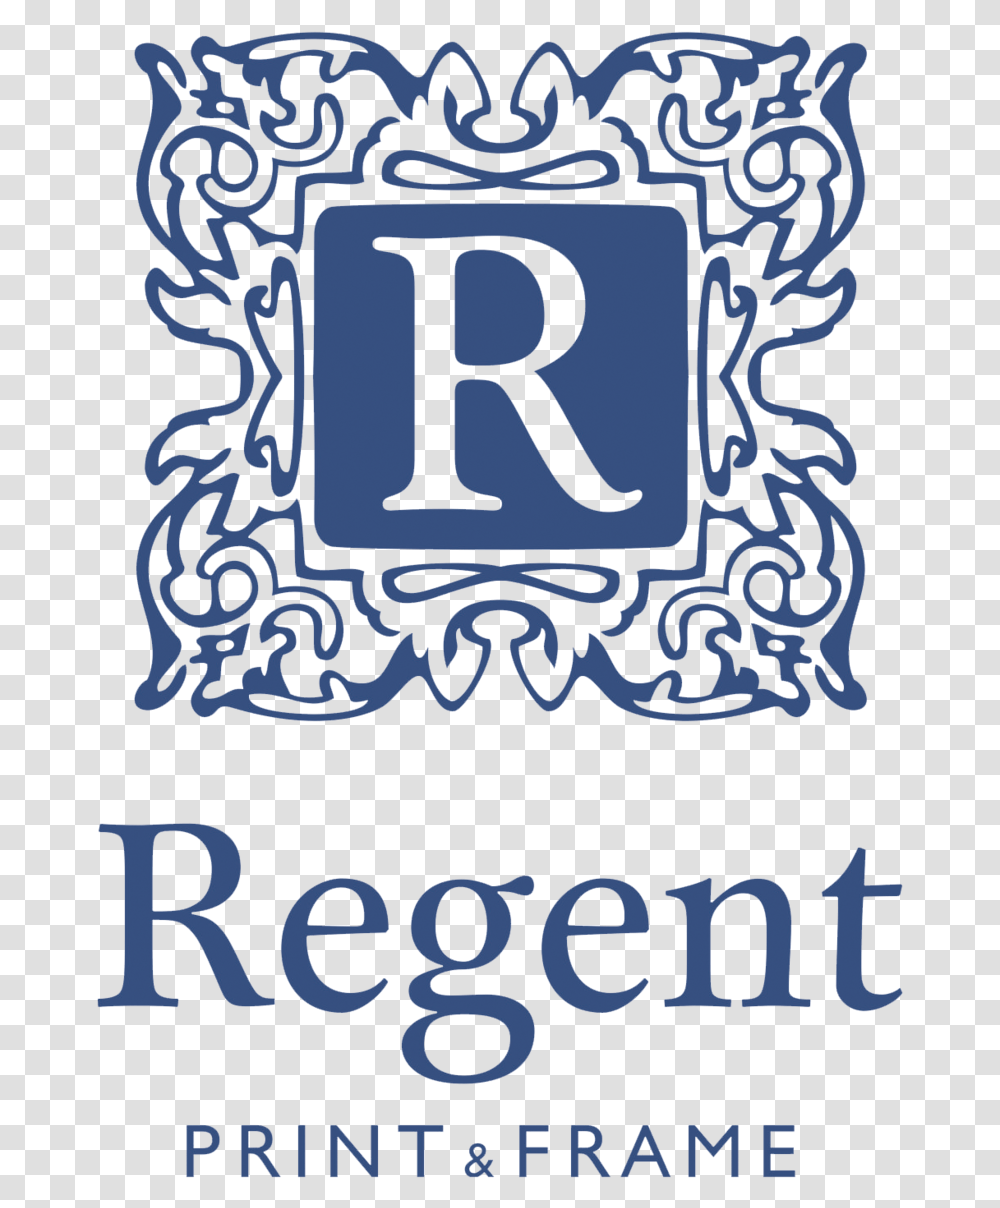 Regent Print Amp Frame Leamington Spa Logo Do It Now Regret It Later, Number, Alphabet Transparent Png